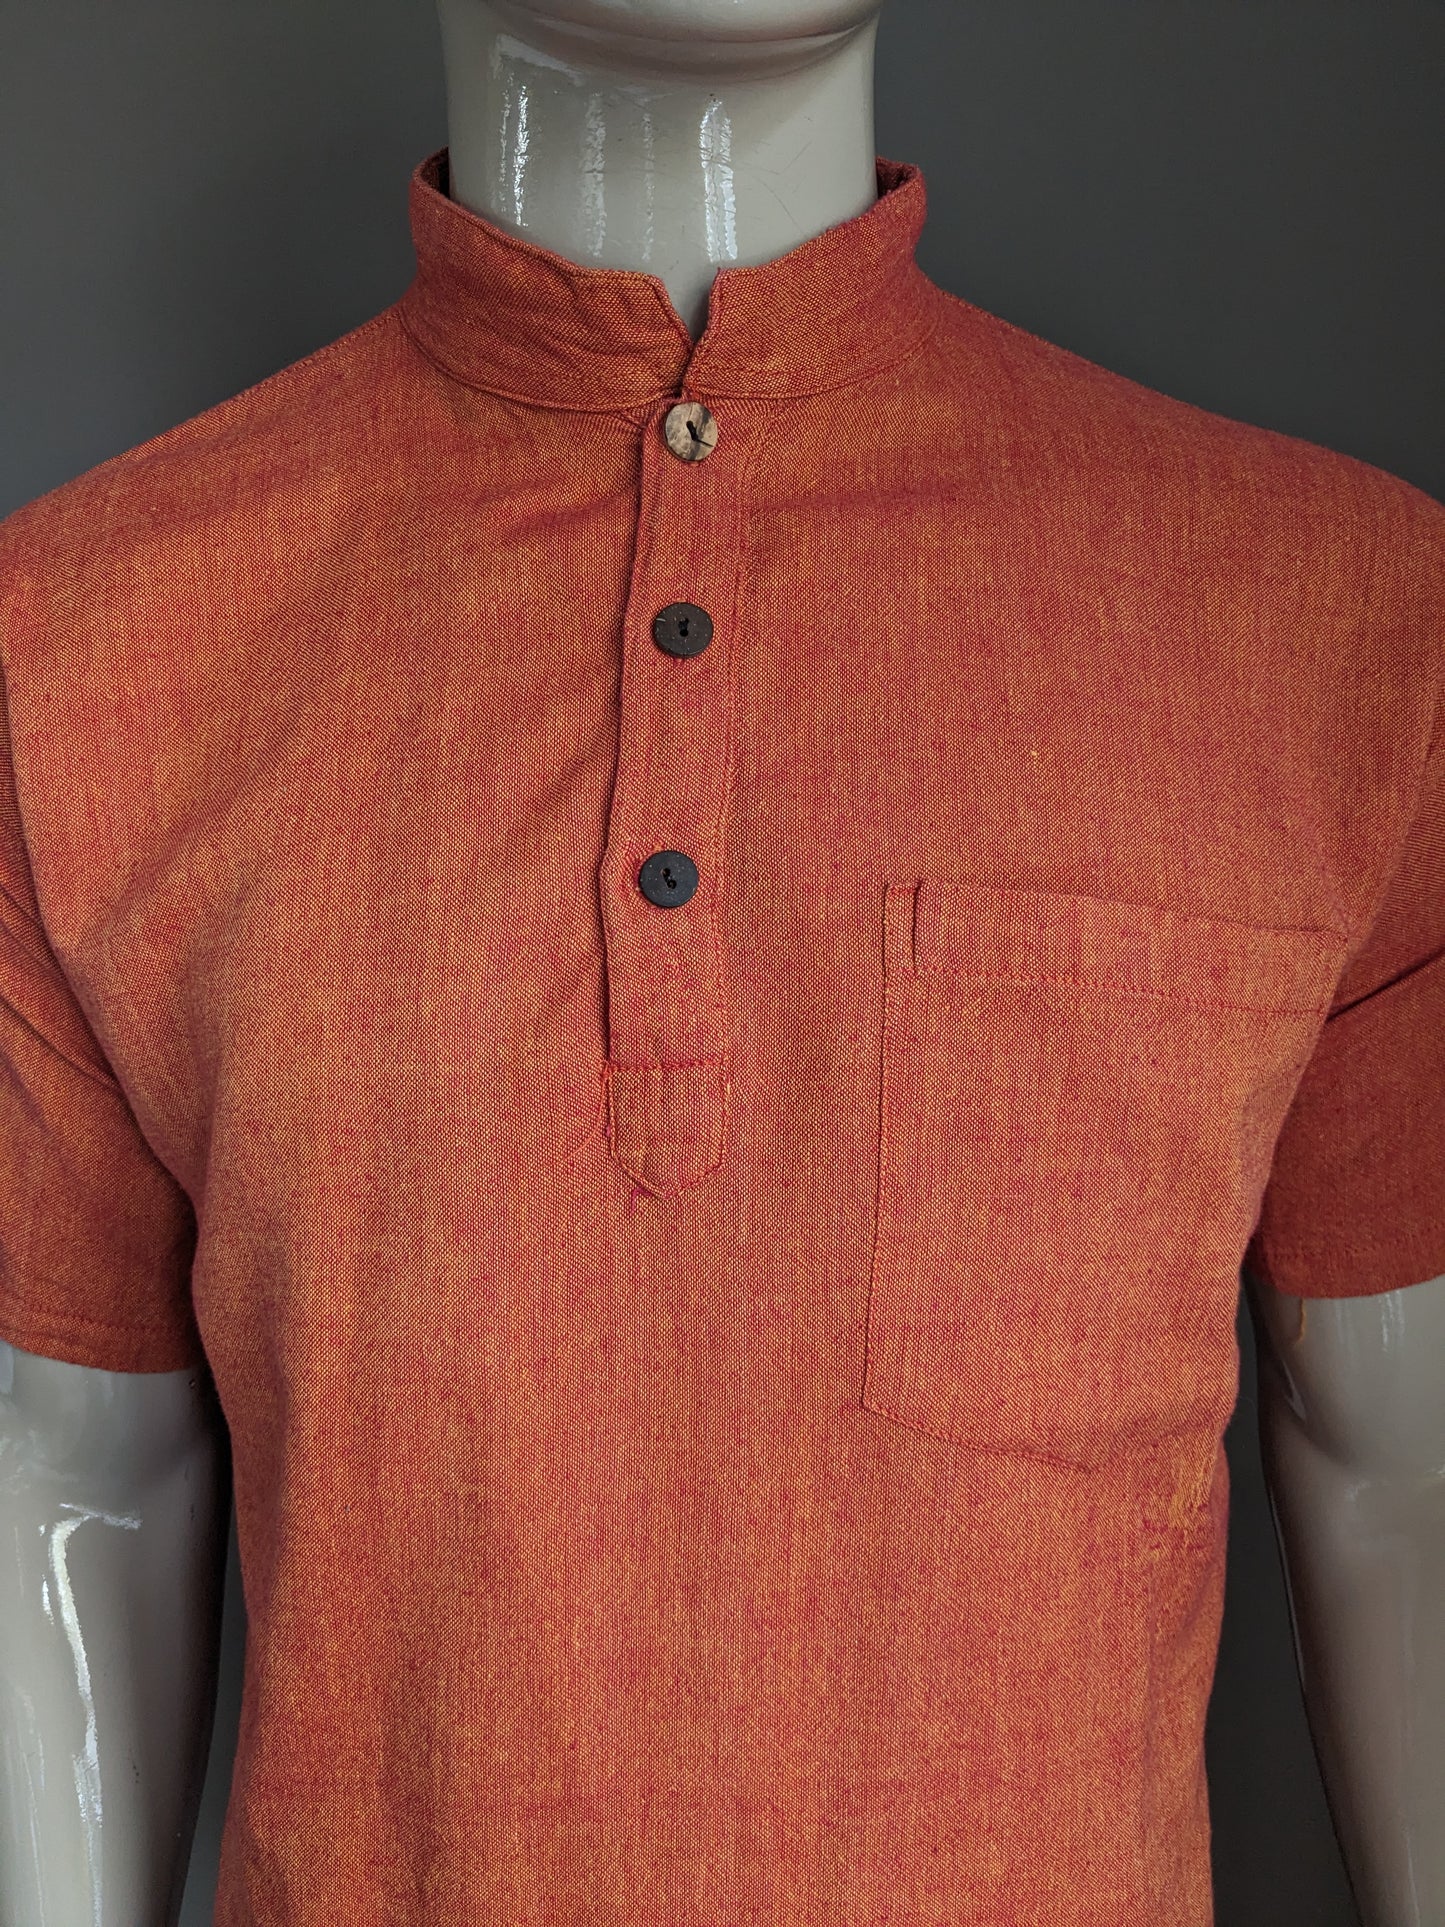 Le Grenier de Katmendou -Hemd mit MAO / Bauern / Stehkragen. Orange rot gemischt. Größe L.